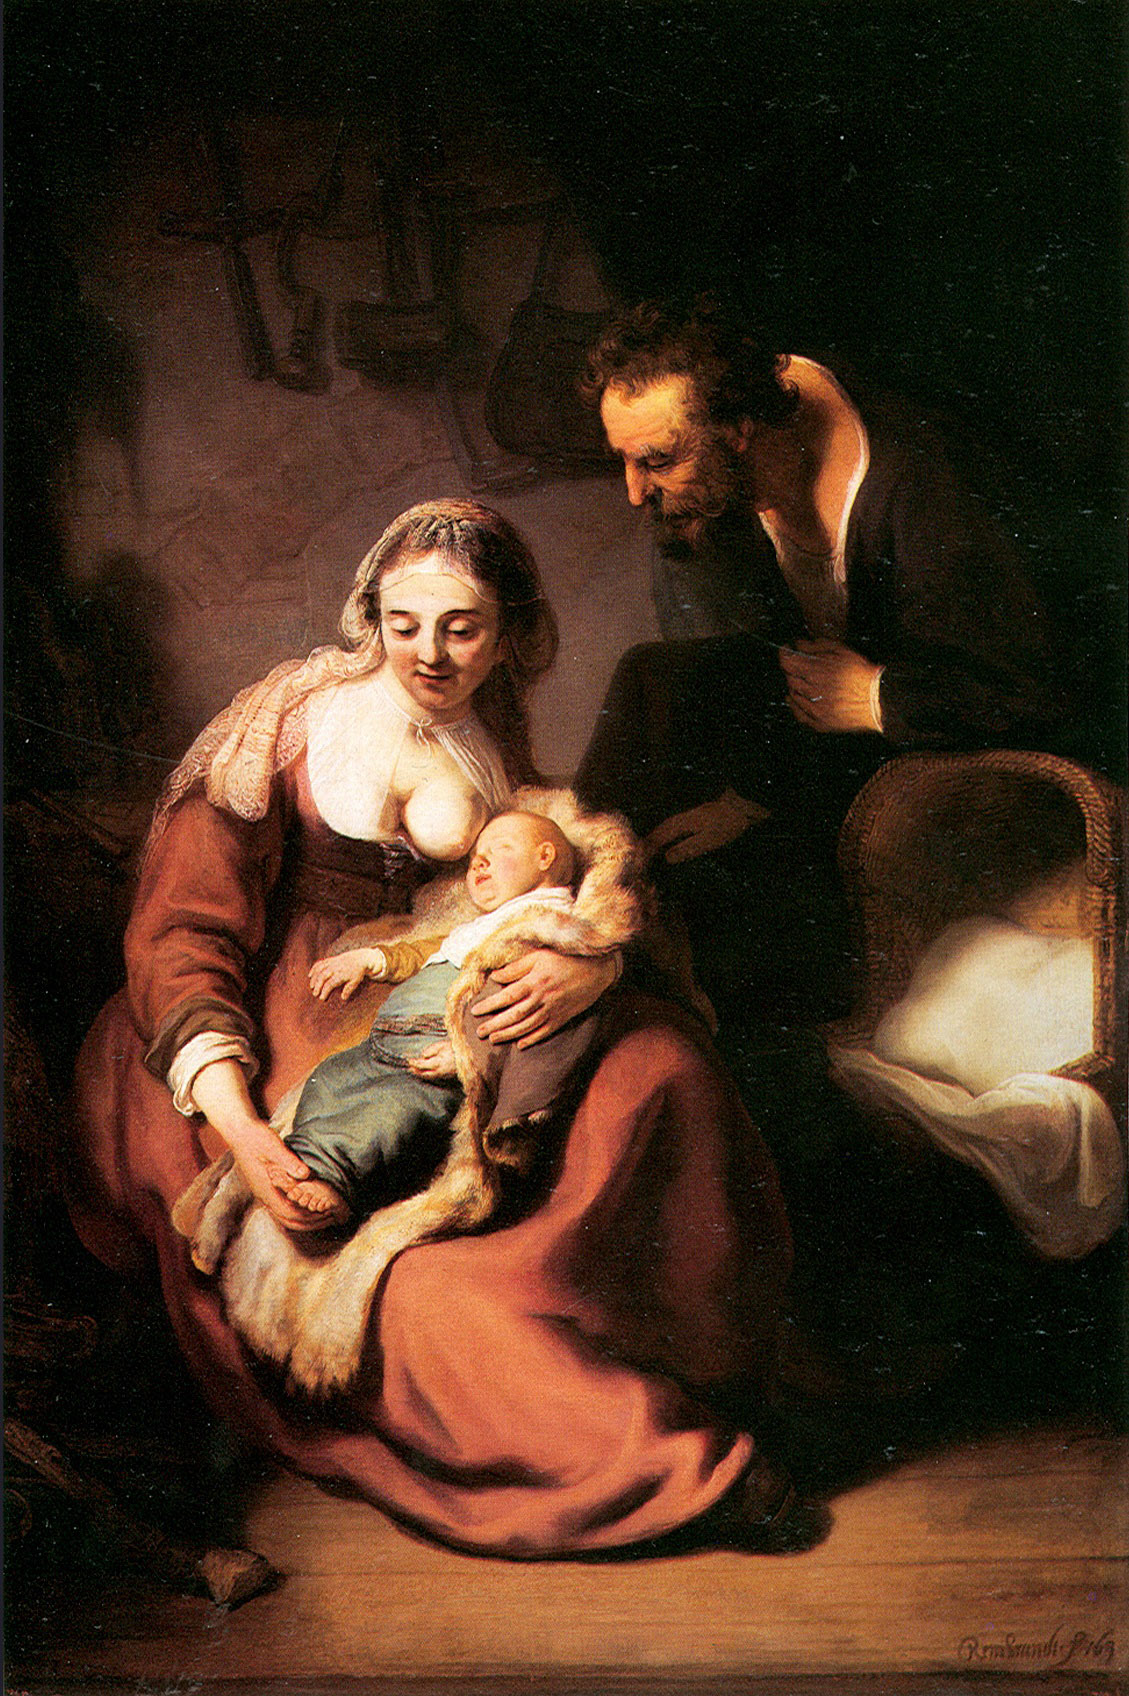 Рембрандт Харменс ван Рейн. "Святое семейство". Около 1634. Старая Пинакотека, Мюнхен.